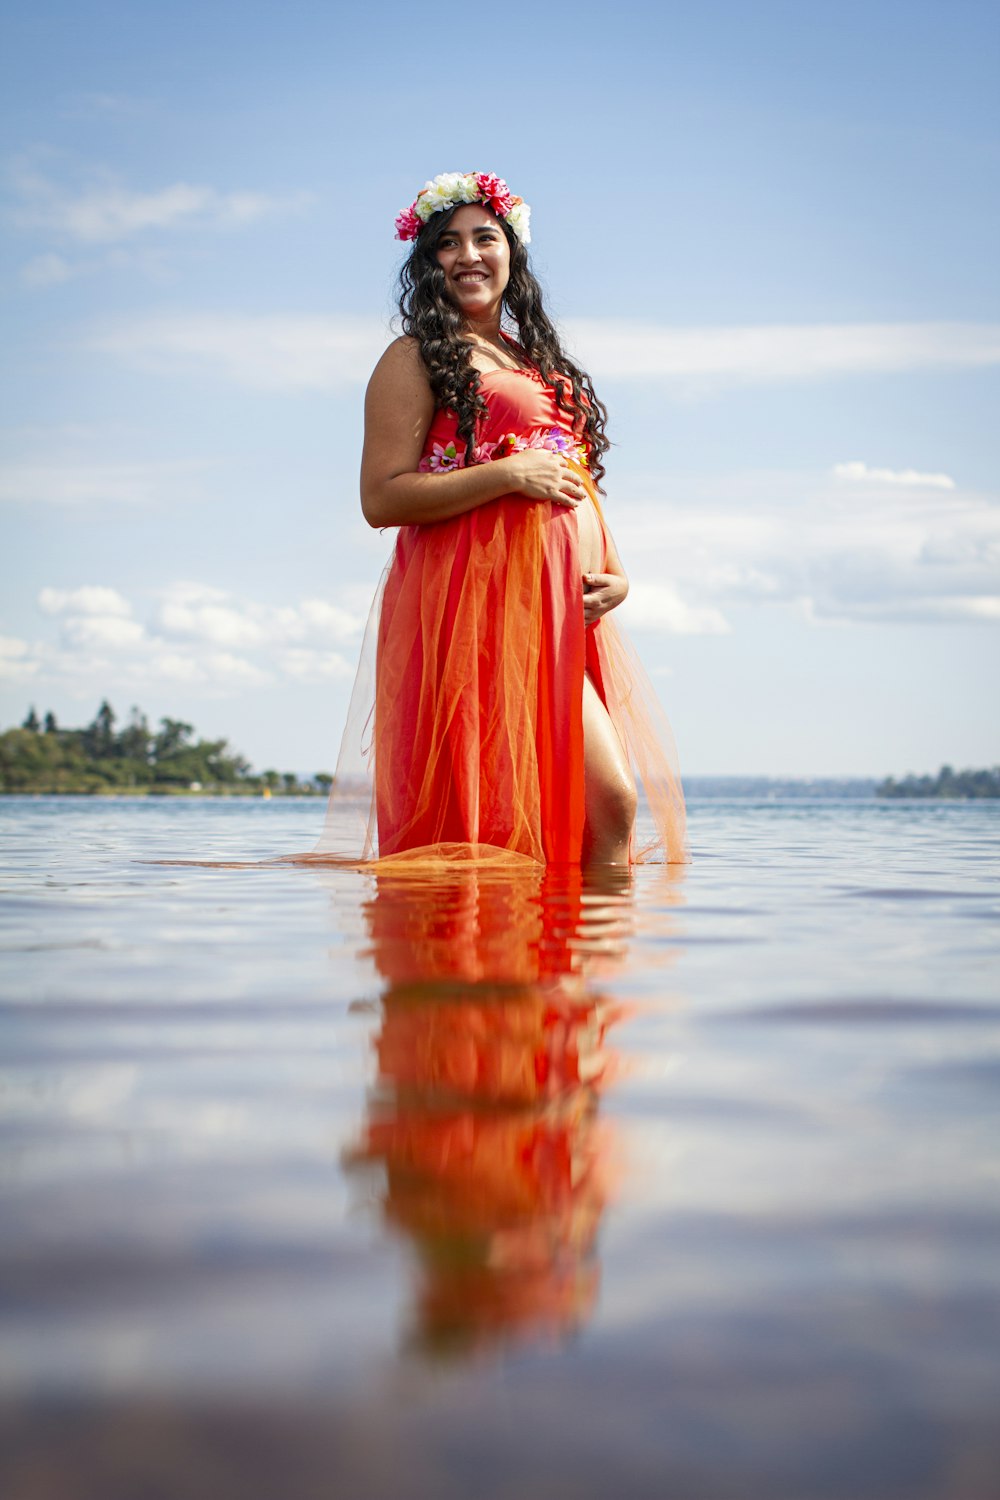 昼間、水の上に立つオレンジ色のノースリーブのドレスを着た女性